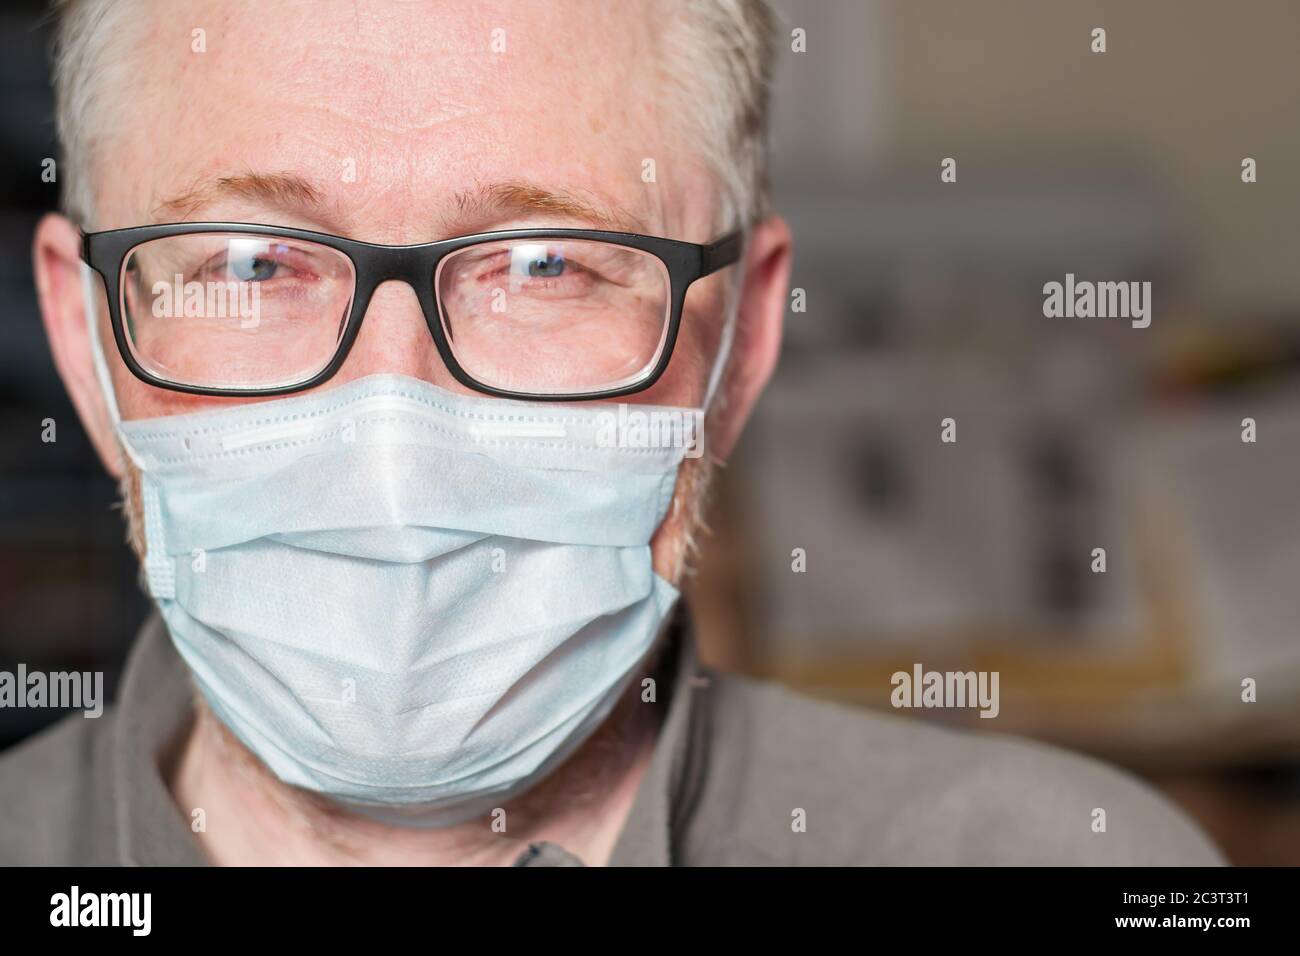 Porträt eines Mannes mit Brille und medizinischer Maske. Das Konzept des Schutzes und der Prävention von Viren- und Infektionskrankheiten. Leerzeichen für Text. Stockfoto